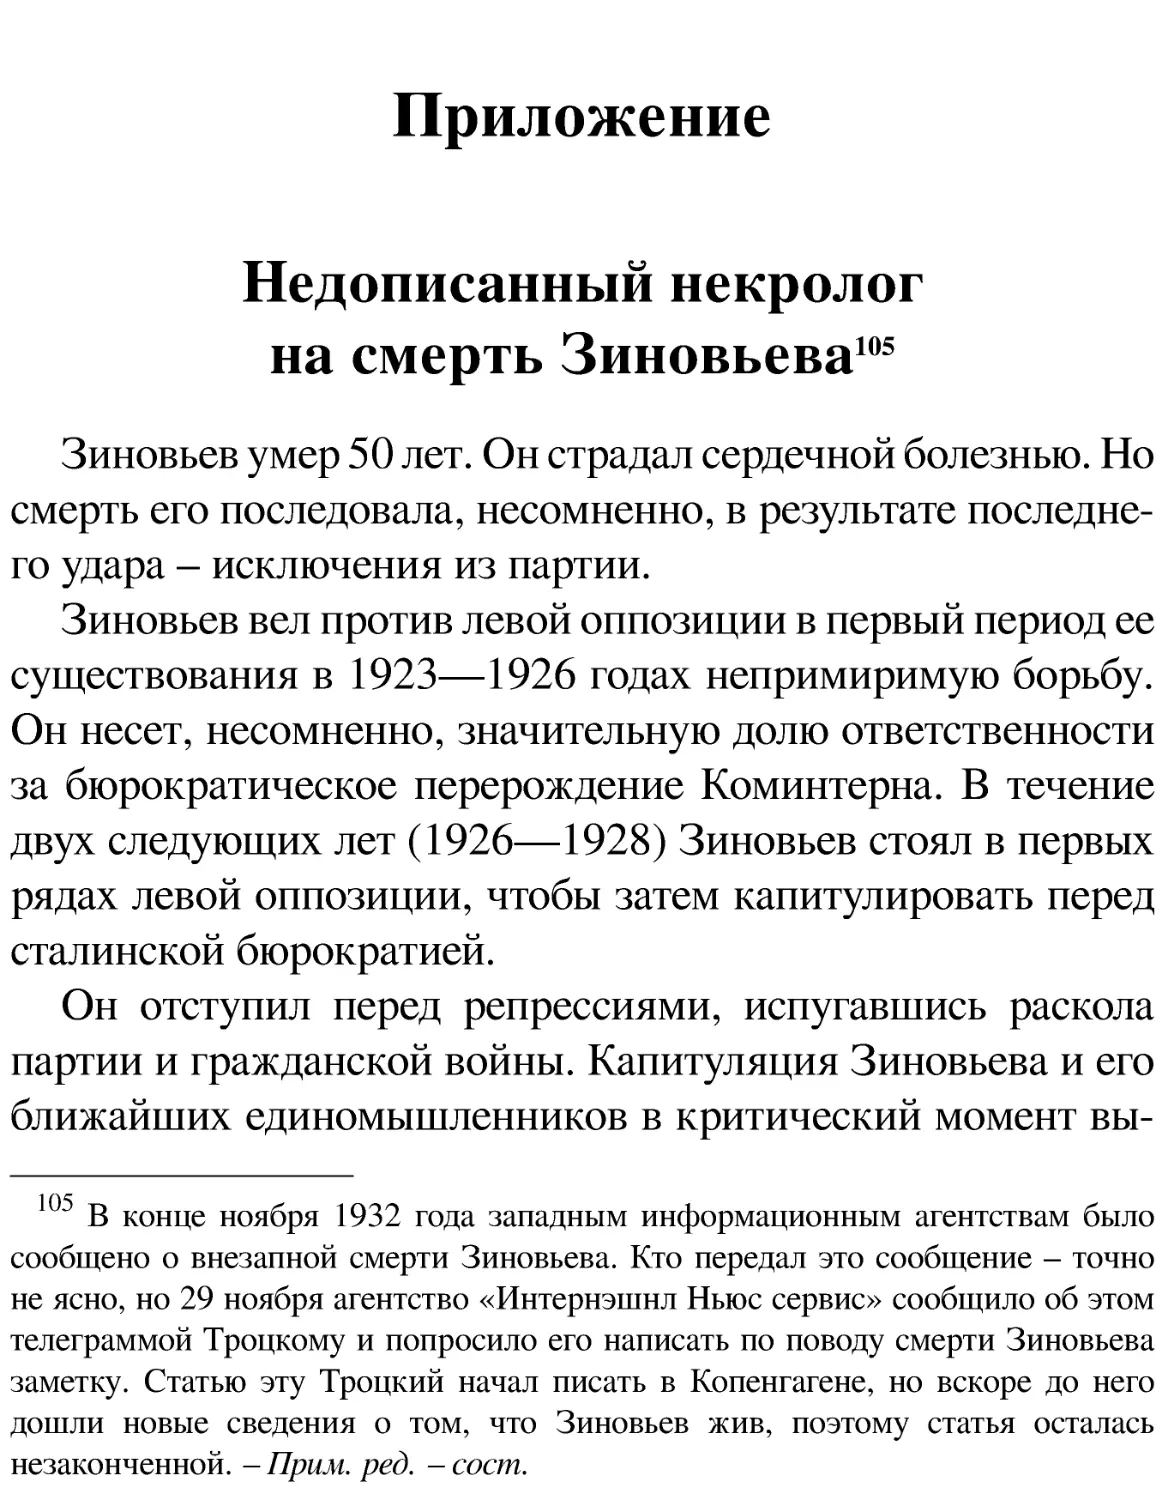 Приложение
Недописанный некролог на смерть Зиновьева[105]